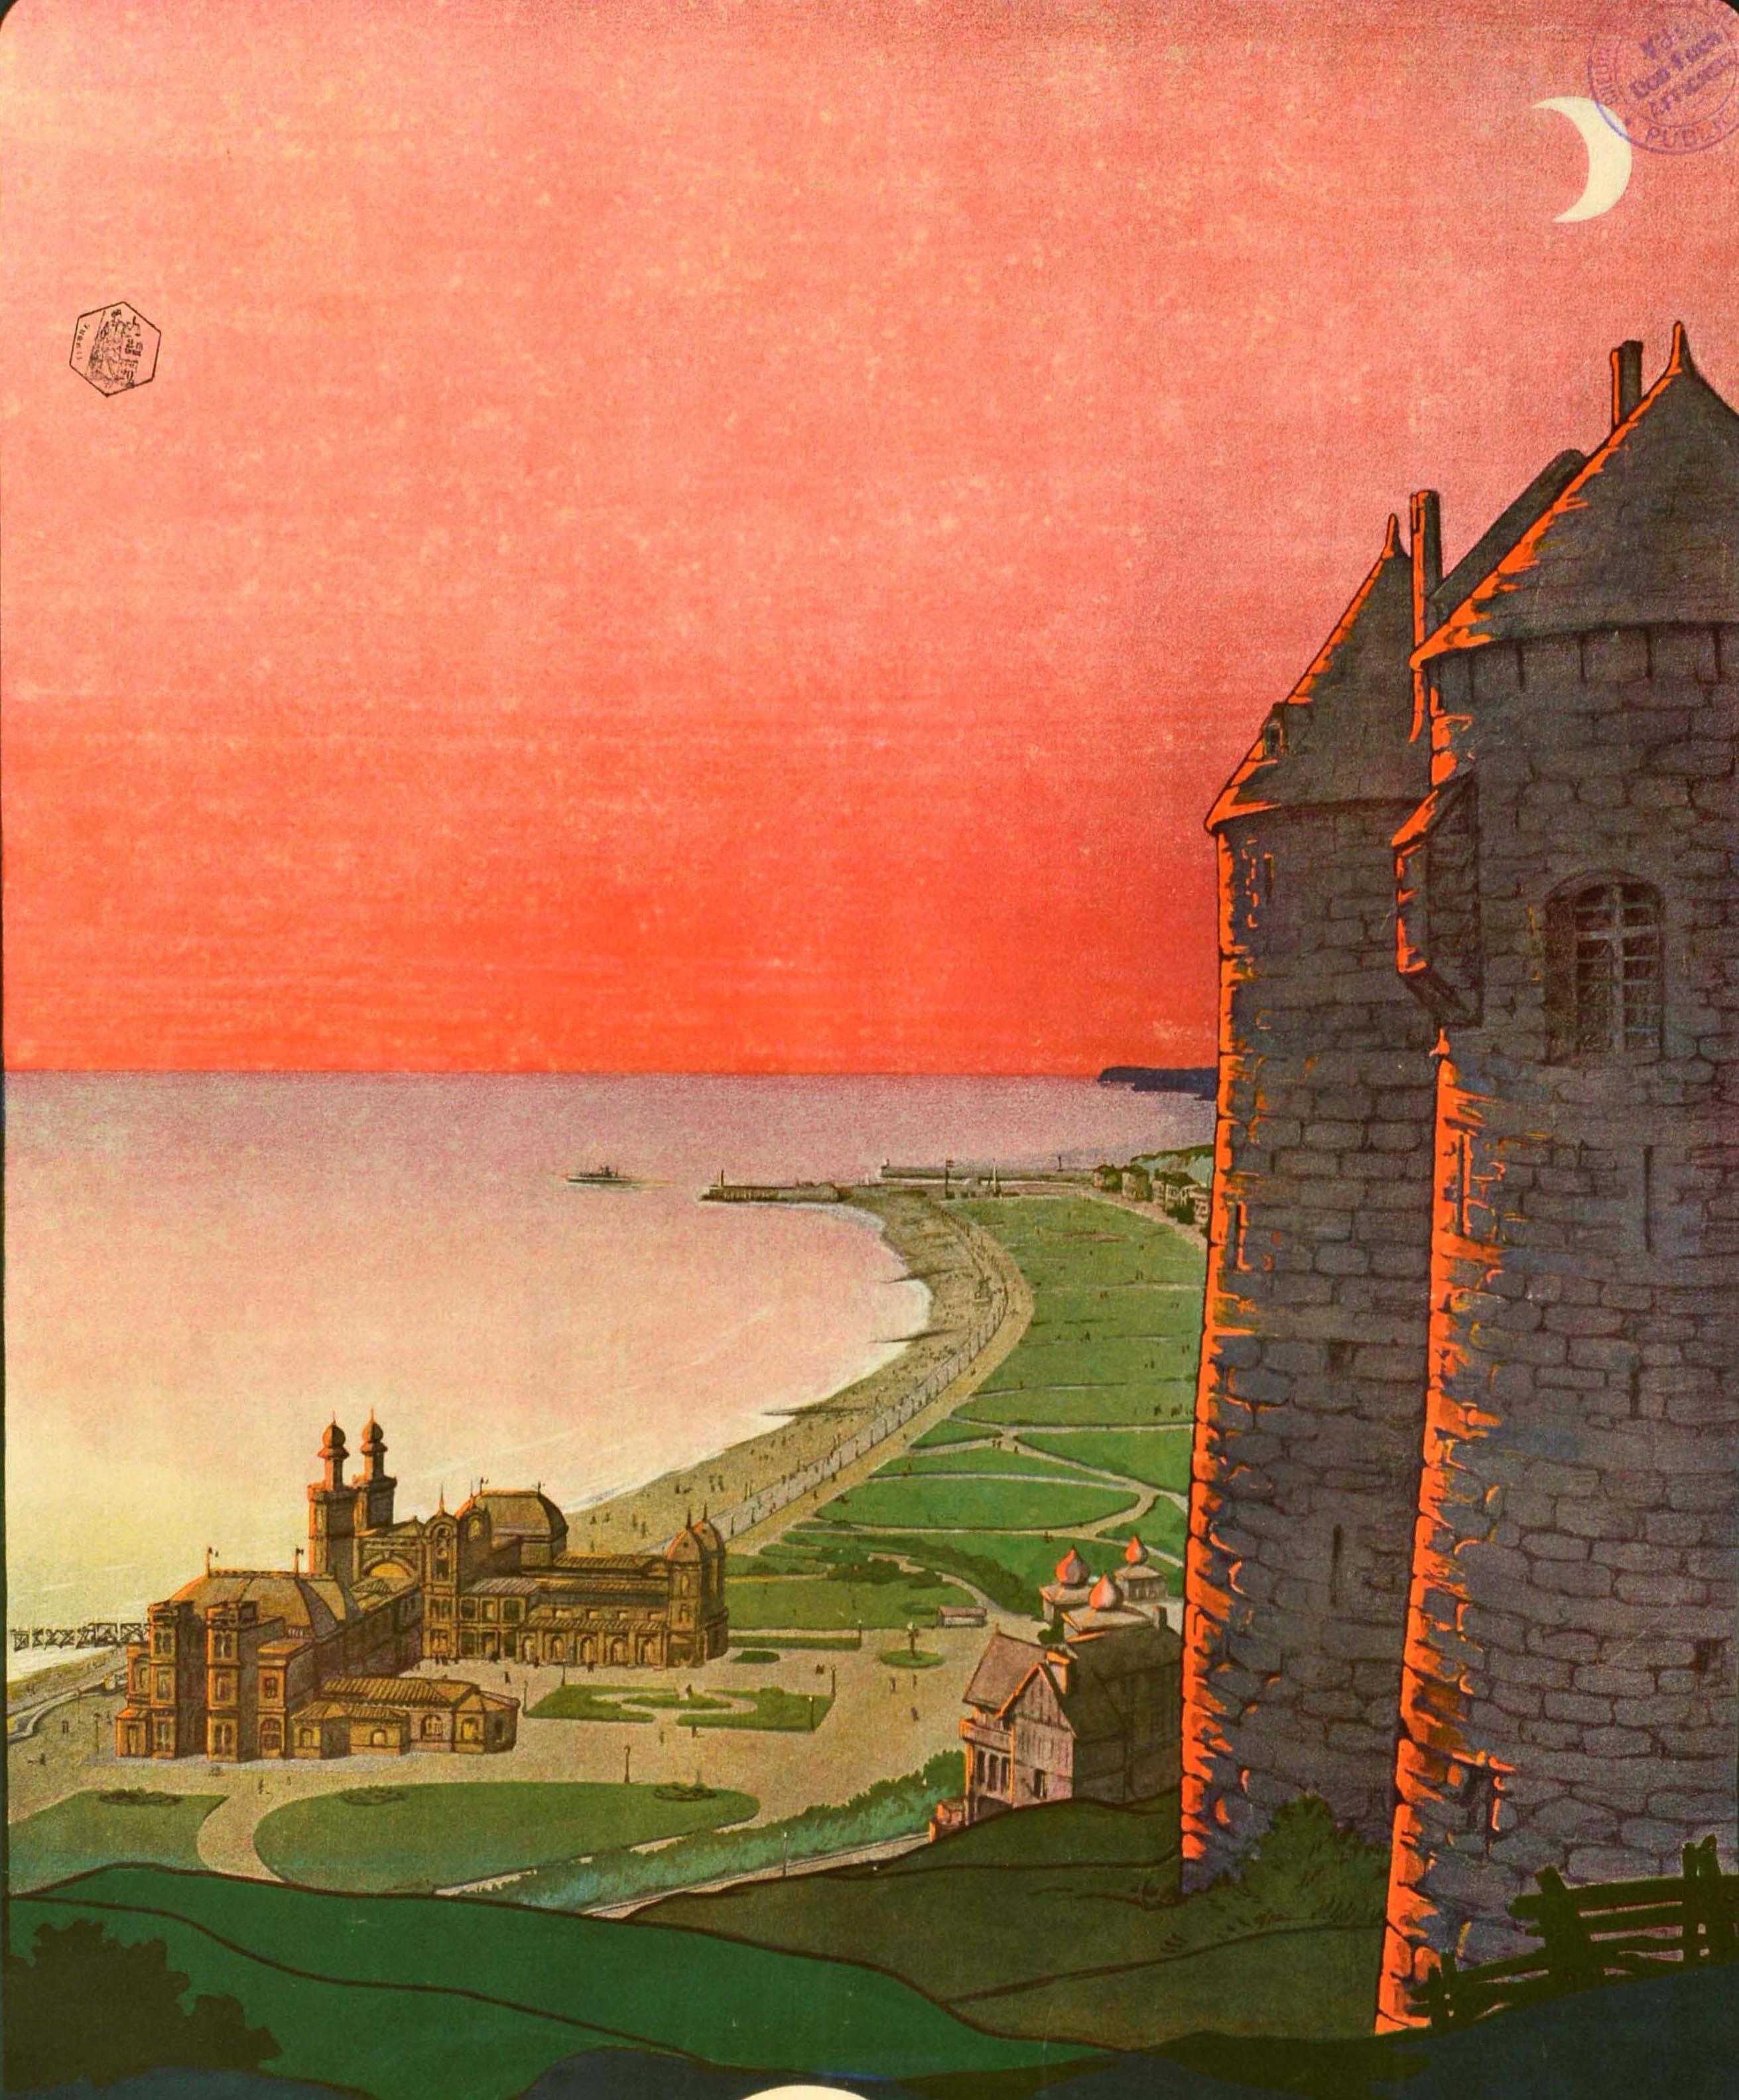 Originales antikes Reiseplakat für Dieppe mit einem großartigen Design von Georges Dorival (1879-1968), das einen Panoramablick auf die Stadt mit ihren Parkanlagen und Stränden an der Küste der Normandie vom historischen Chateau de Dieppe aus zeigt,